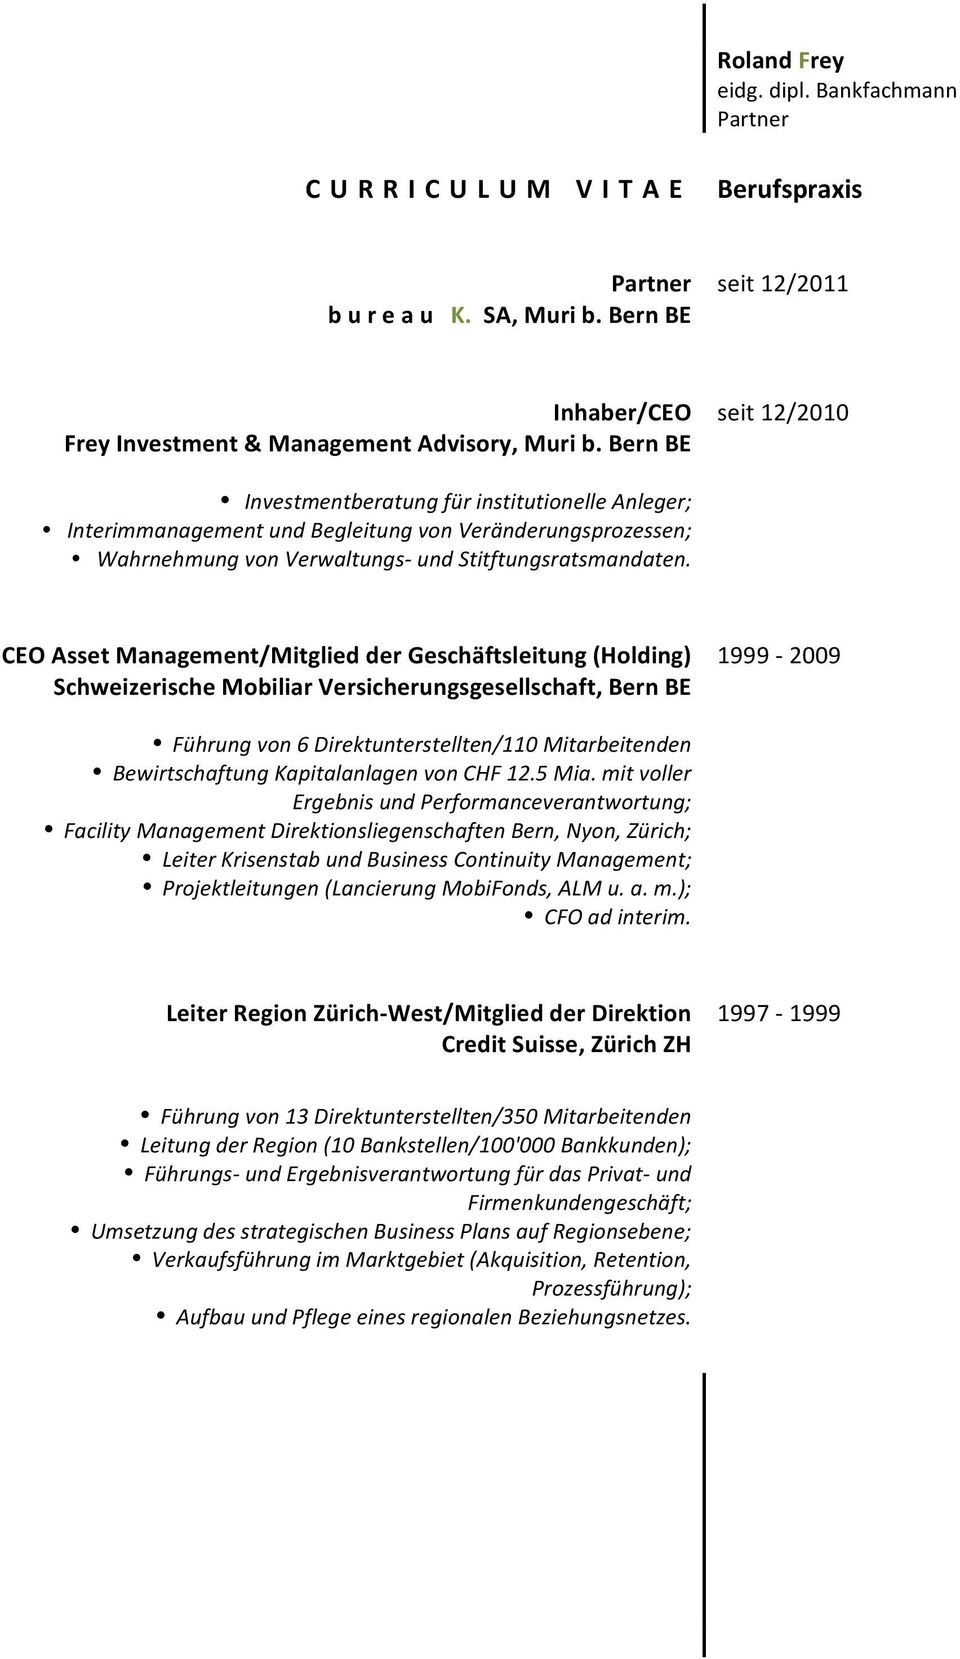 CEO Asset Management/ der Geschäftsleitung (Holding) Schweizerische Mobiliar Versicherungsgesellschaft, Bern BE 1999-2009 Führung von 6 Direktunterstellten/110 Mitarbeitenden Bewirtschaftung